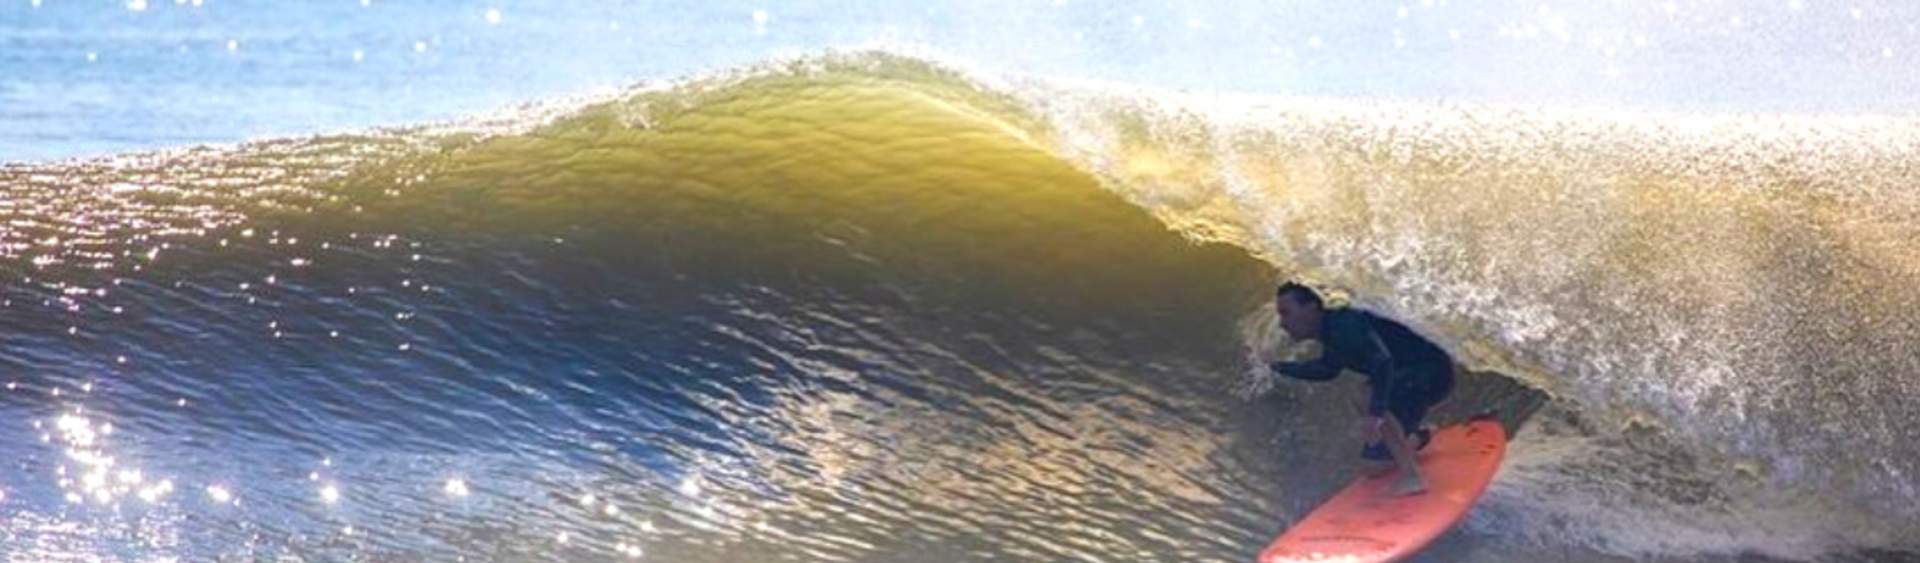 Best surf videos: 13 must-watch surfing clips